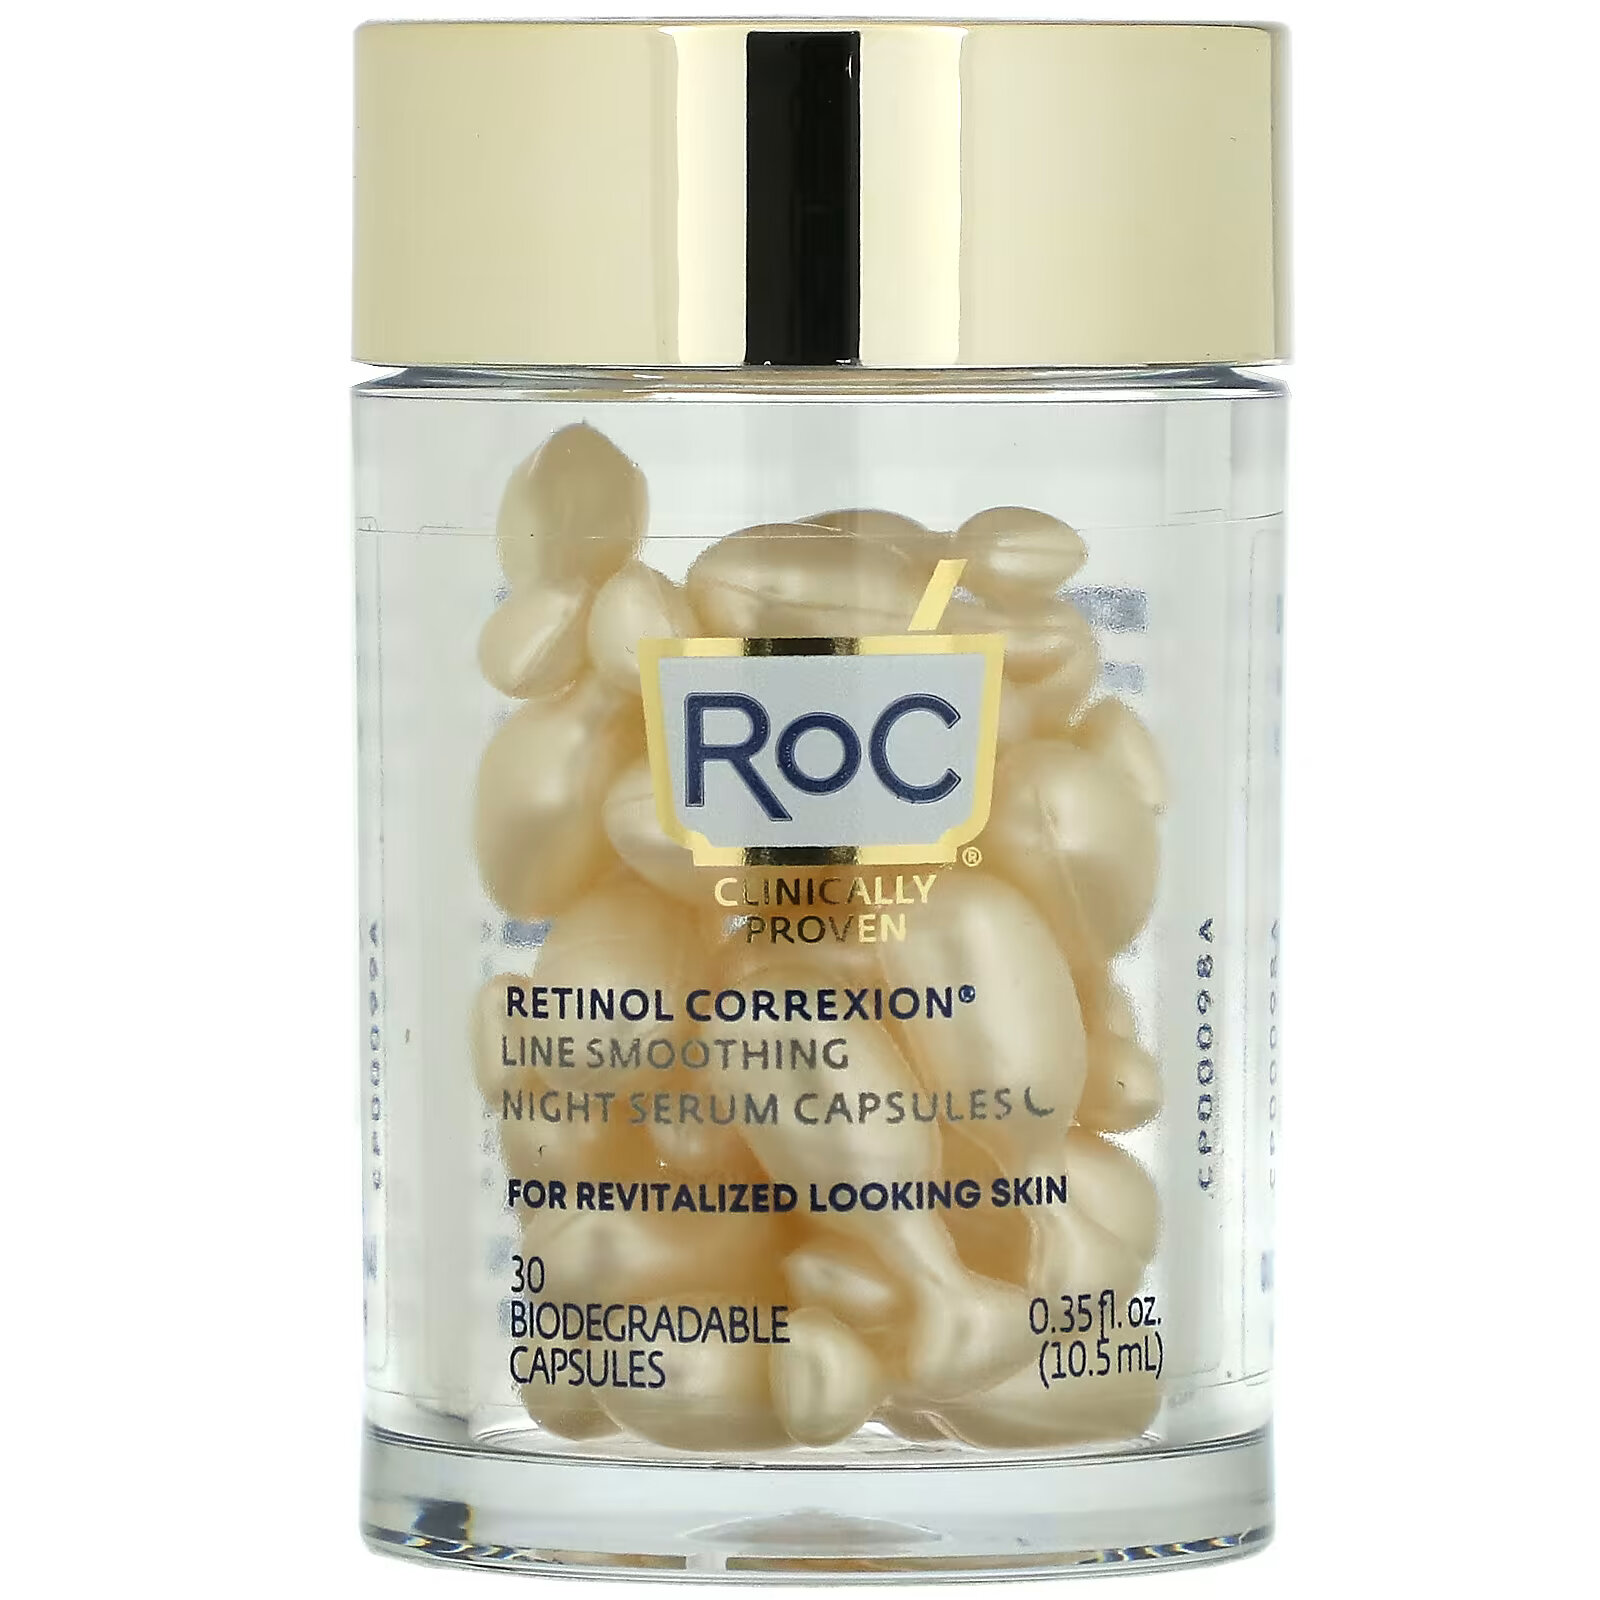 RoC, Разглаживающая ночная сыворотка с ретинолом, 30 биоразлагаемых капсул retinol correxion line разглаживающая ночная сыворотка капсулы 30 шт roc